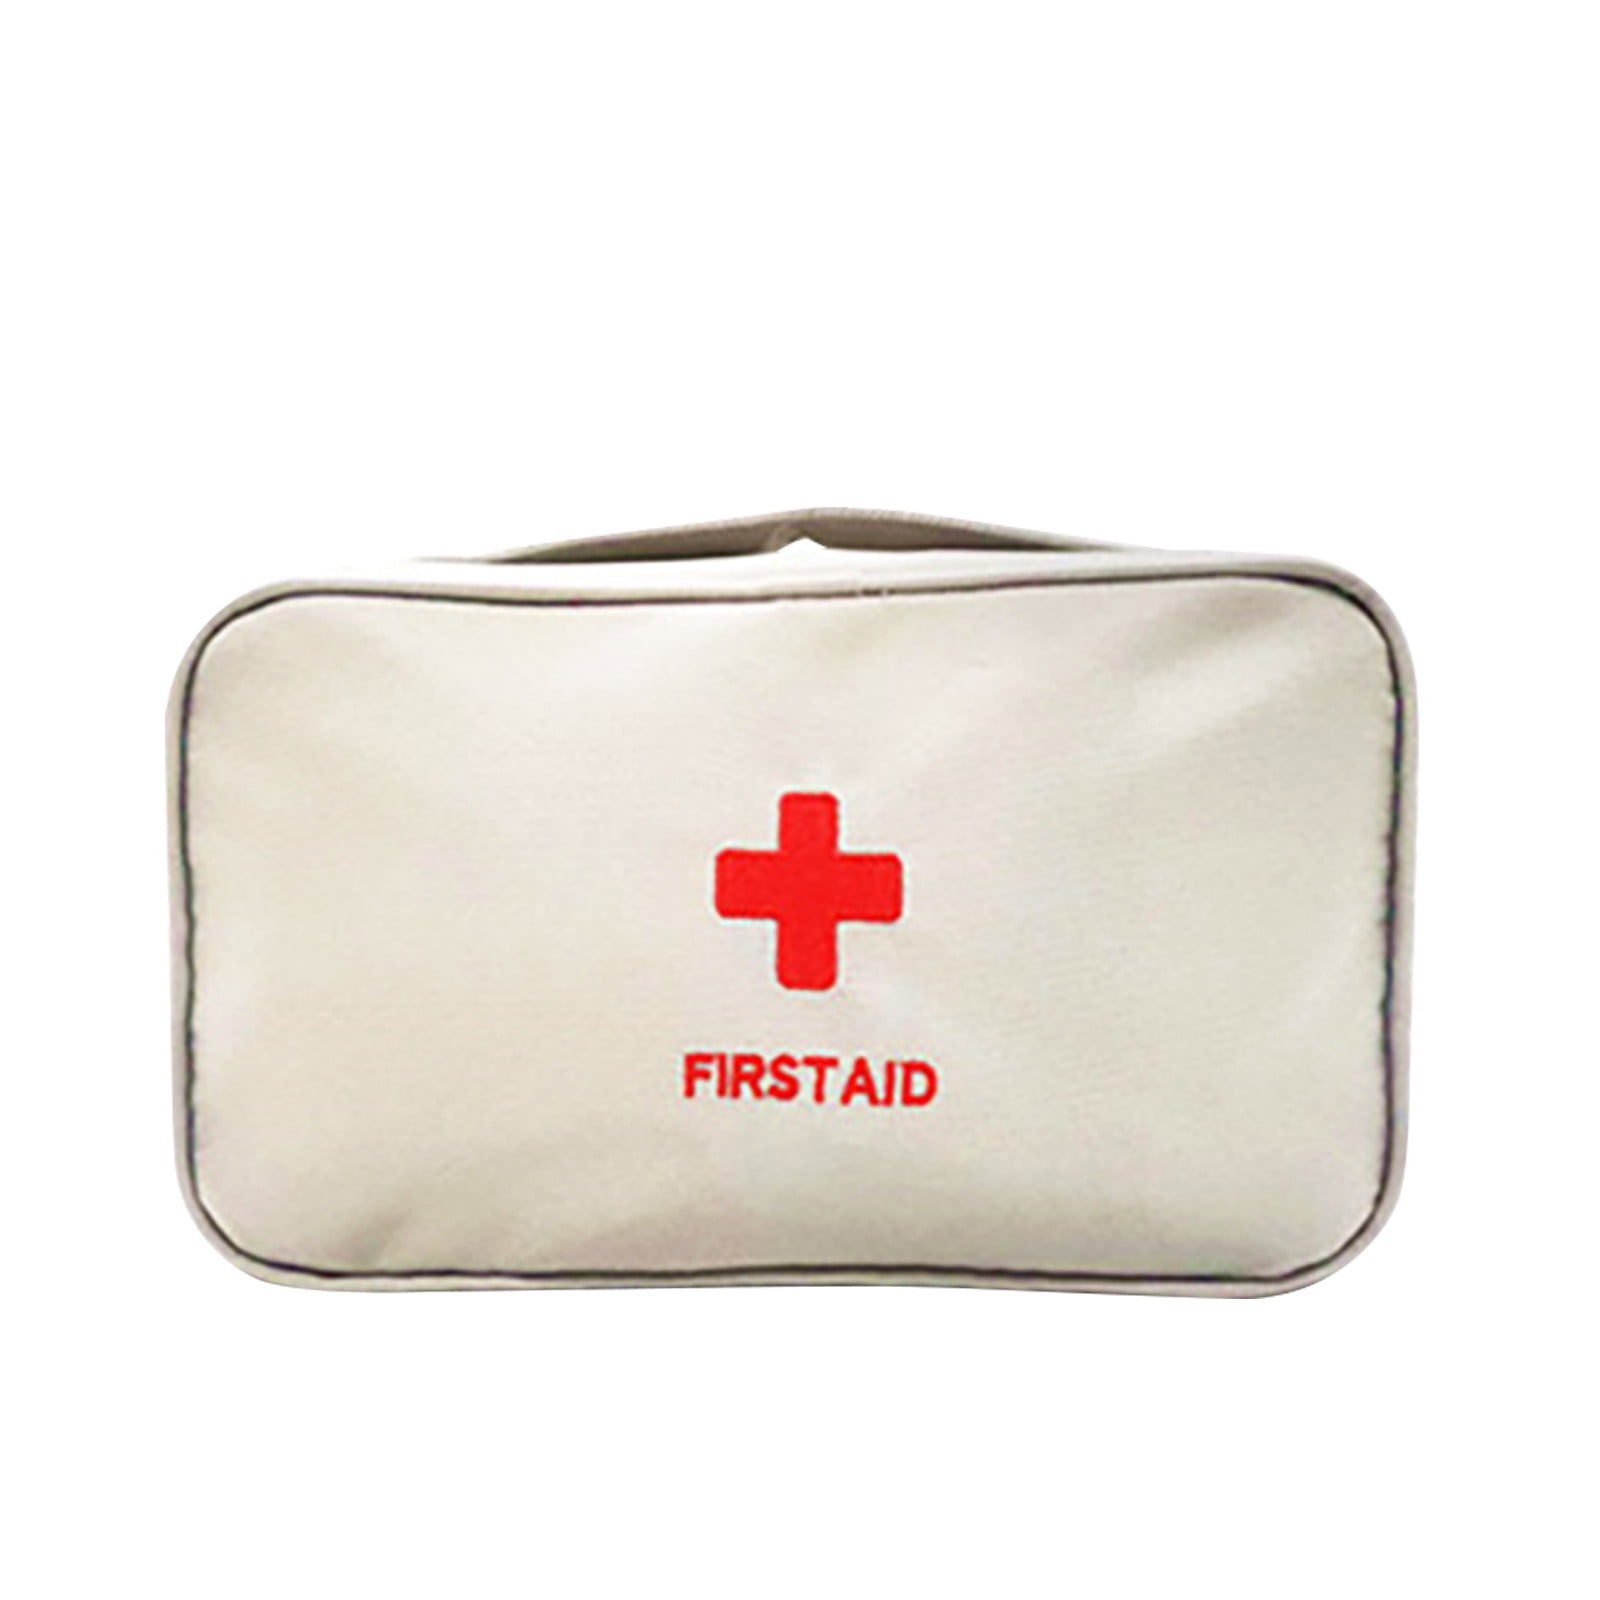 XMMSWDLA Empty First Aid Bags, Travel Medicine Bag, Medical